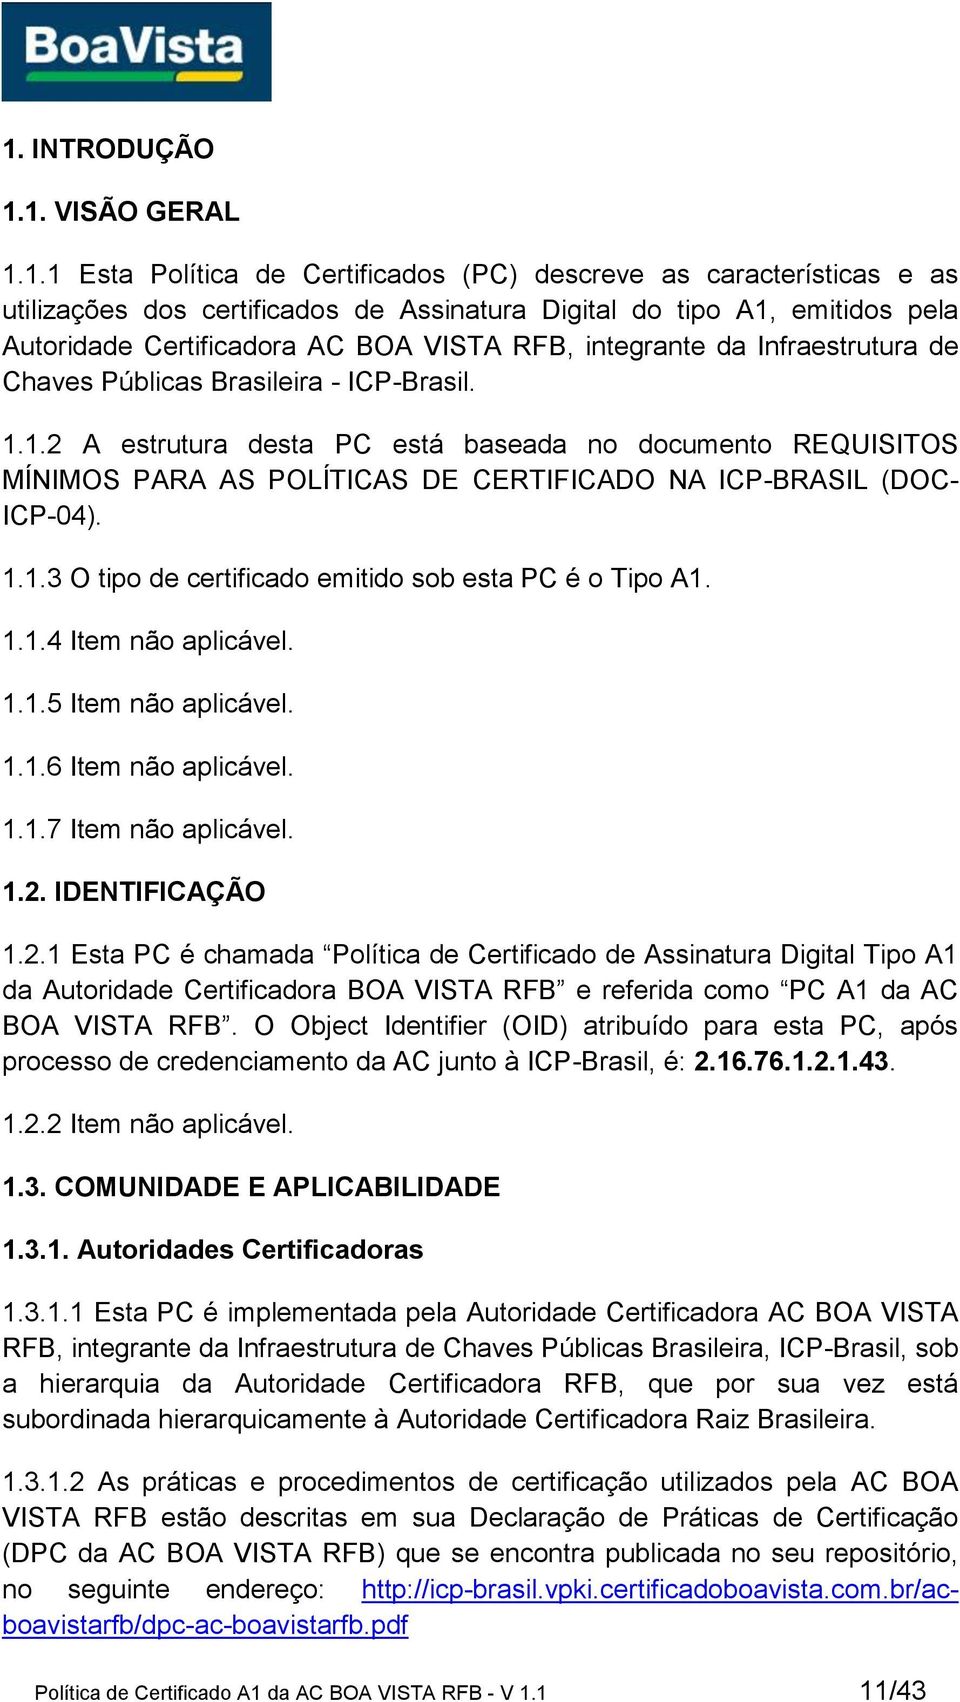 1.2 A estrutura desta PC está baseada no documento REQUISITOS MÍNIMOS PARA AS POLÍTICAS DE CERTIFICADO NA ICP-BRASIL (DOC- ICP-04). 1.1.3 O tipo de certificado emitido sob esta PC é o Tipo A1. 1.1.4 Item não aplicável.